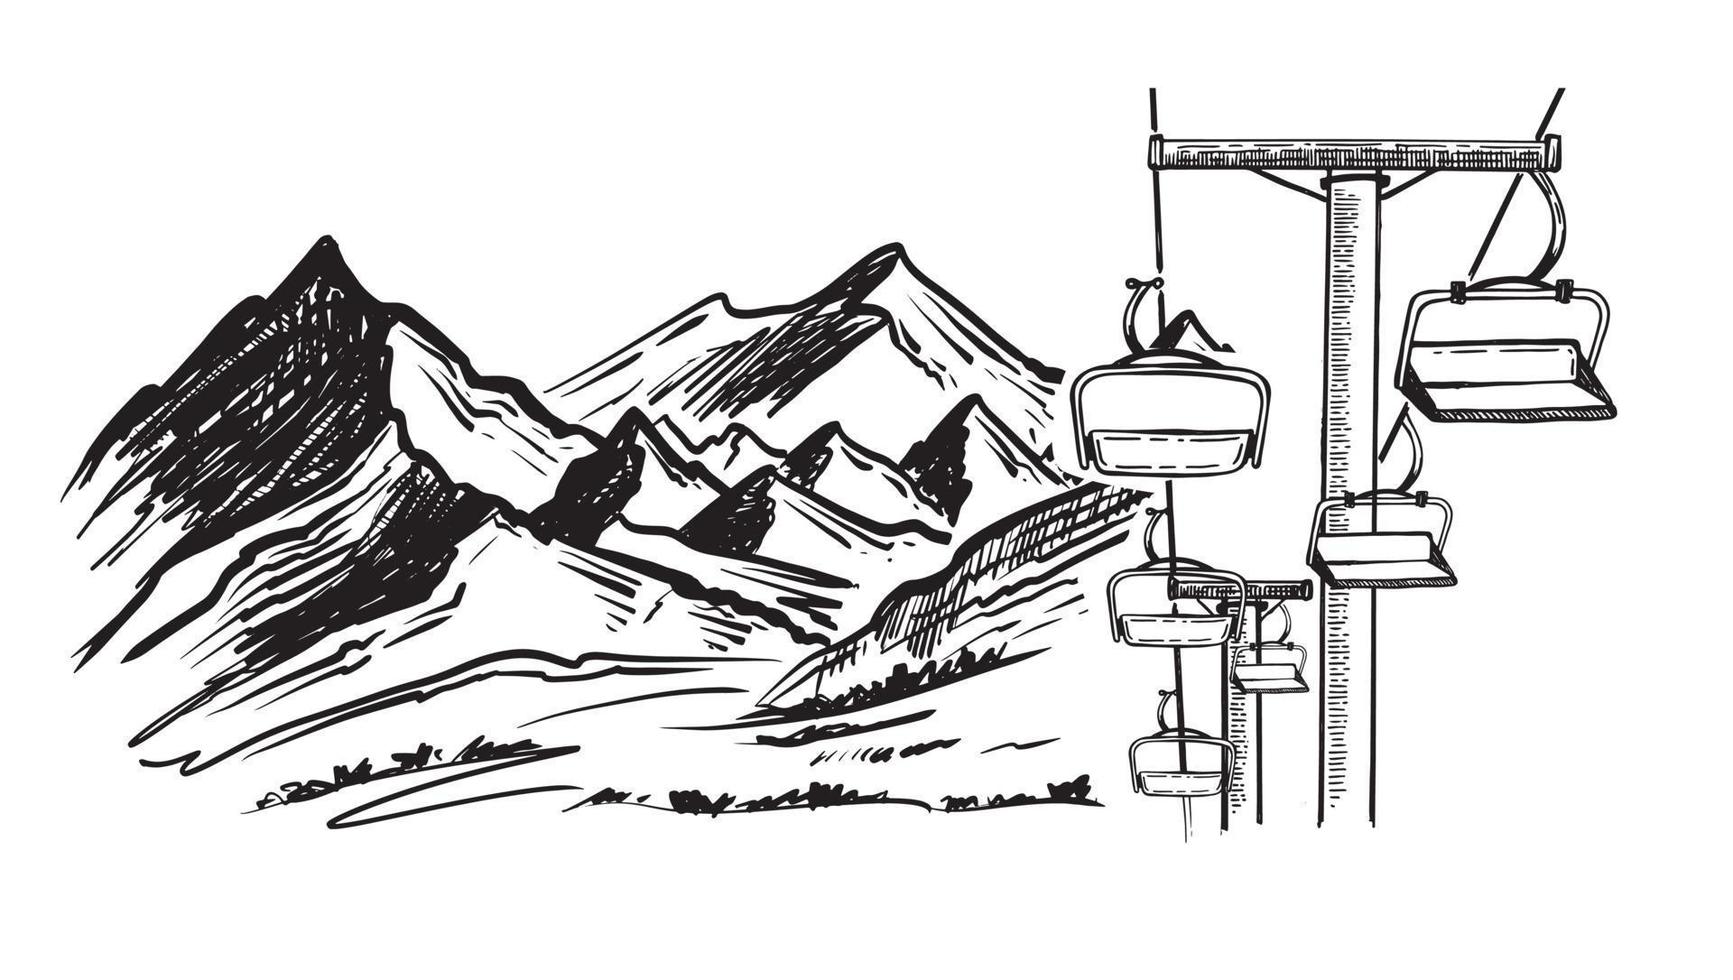 Landscape mountains. Sketch of ski resort. Hand drawn illustration vector